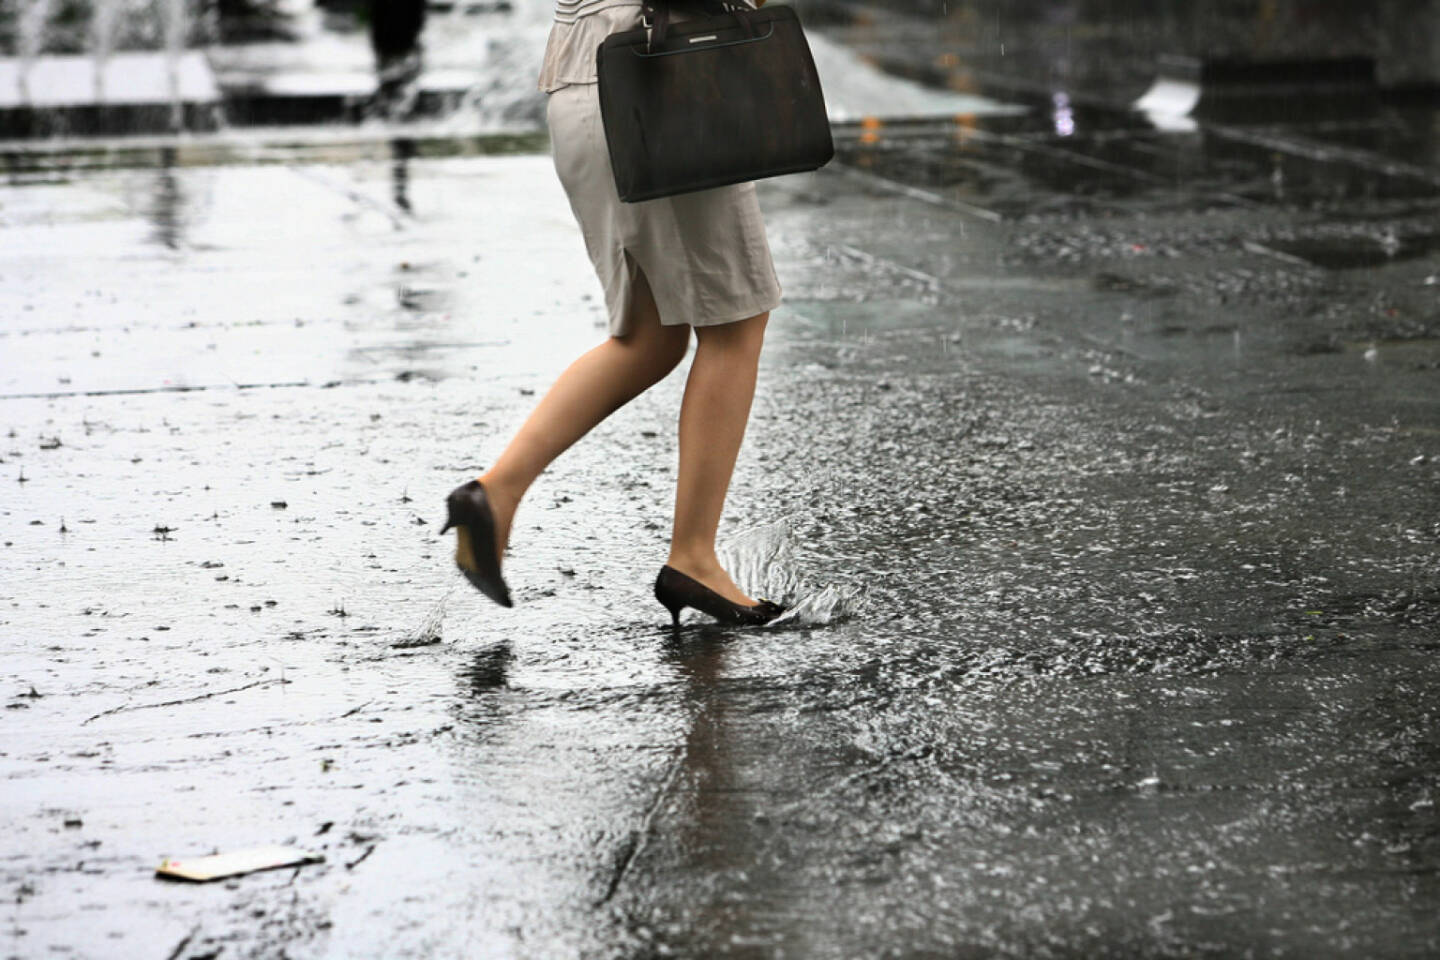 Regen, Sturm, nass, Füße, nasse Füße, http://www.shutterstock.com/de/pic-142814155/stock-photo-female-feet-with-heels-shoes-walk-on-water-when-it-rains.html (Bild: shutterstock.com)